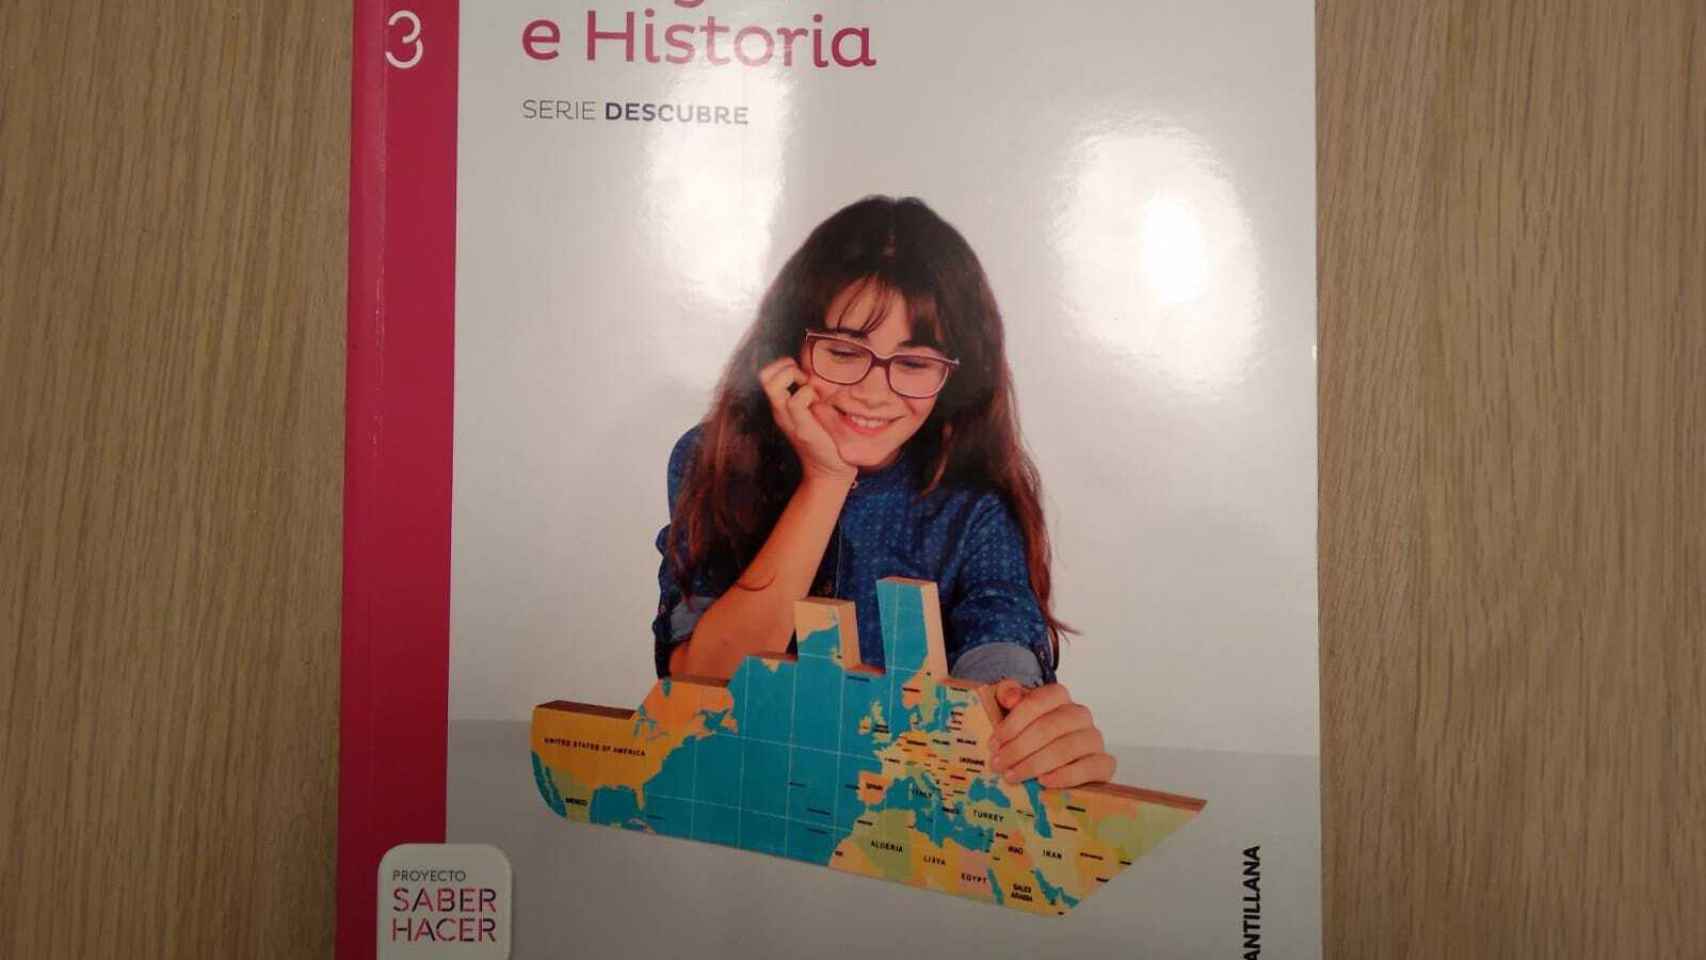 Libro de Geografía e Historia de la editorial Santillana con el que estudia Leonor.